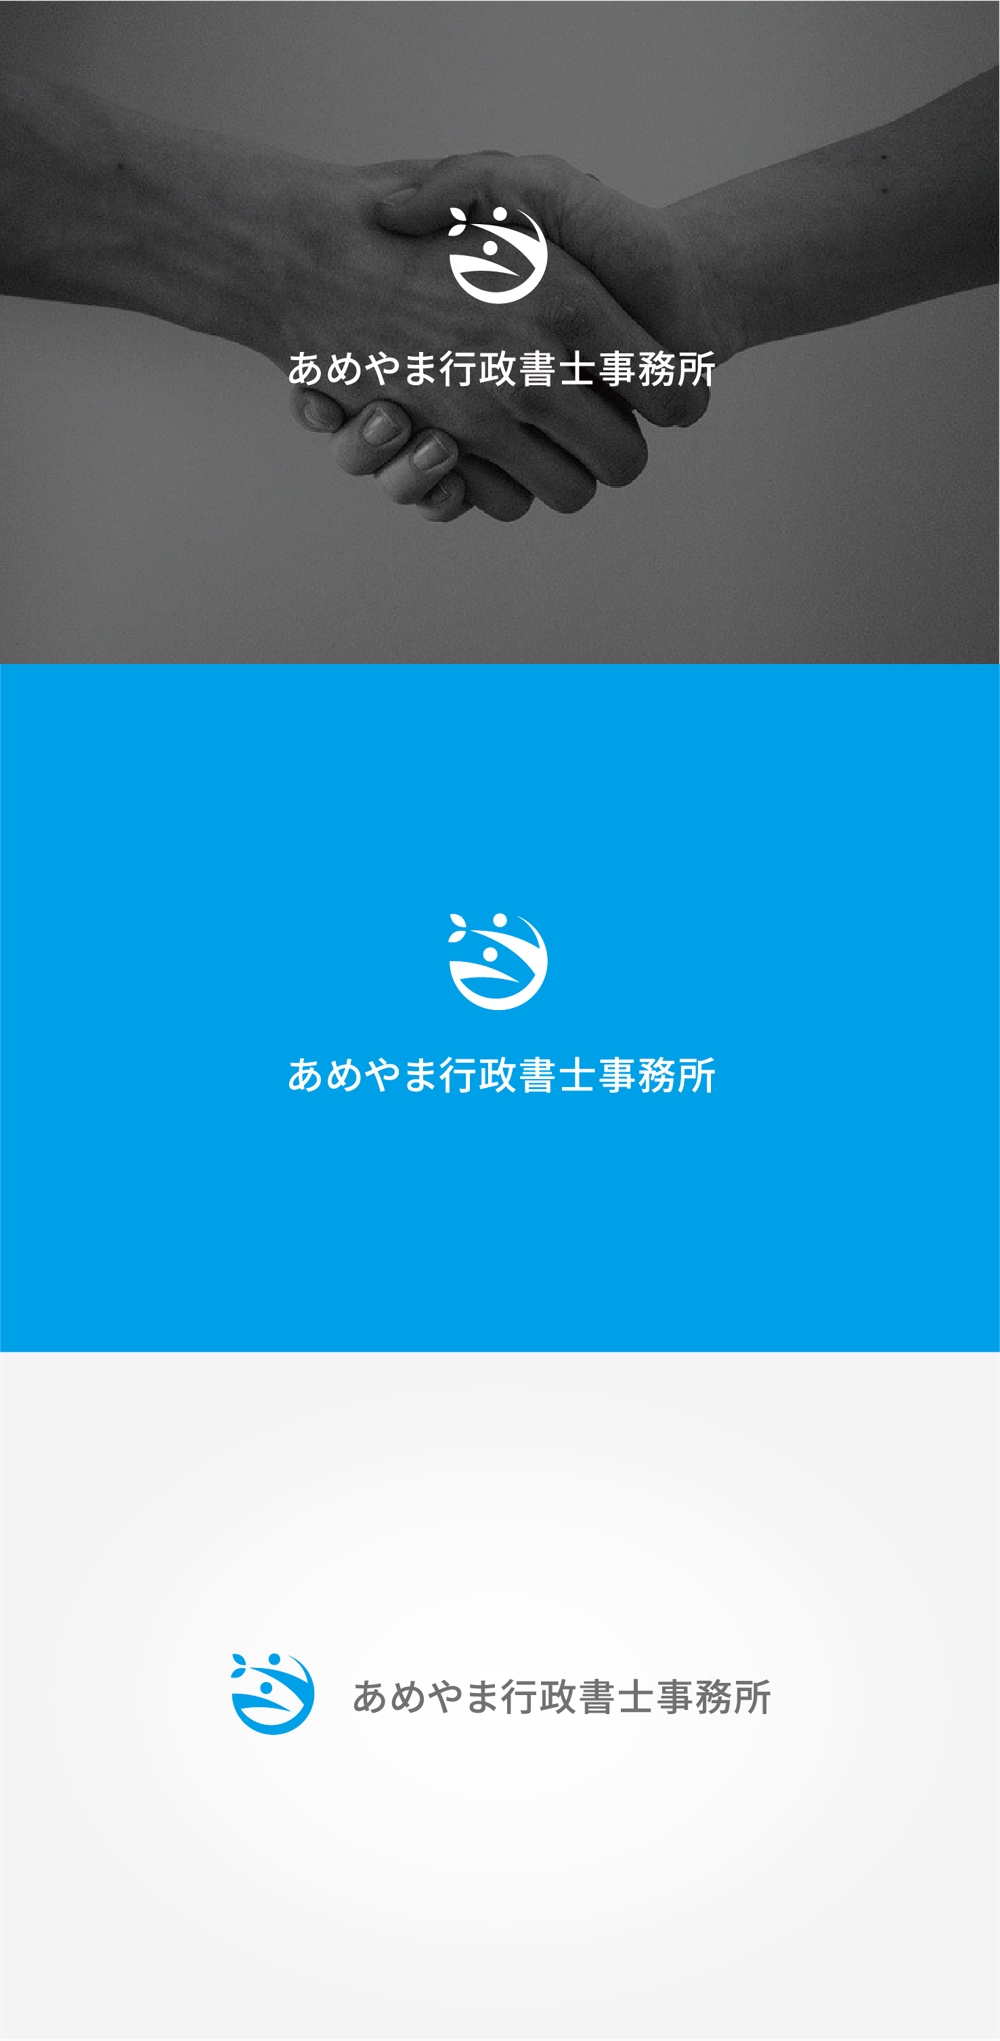 「あめやま行政書士事務所」のロゴ